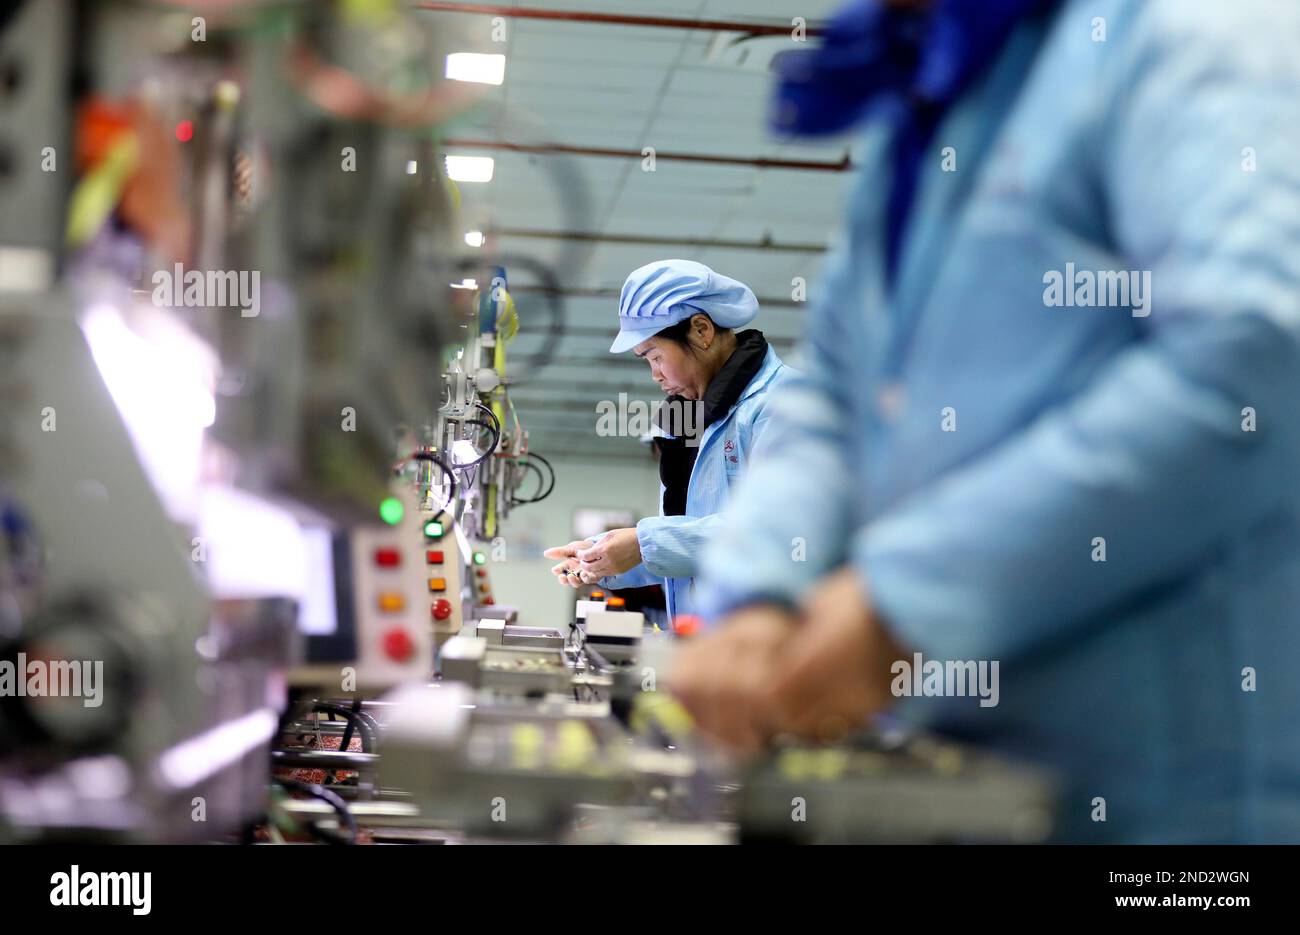 ZIXING, CHINA – 14. FEBRUAR 2023 – Arbeiter arbeiten in einer automatisierten Produktionswerkstatt von Huihua Electronics Co LTD in der Zixing Economic Development Zone, Stockfoto